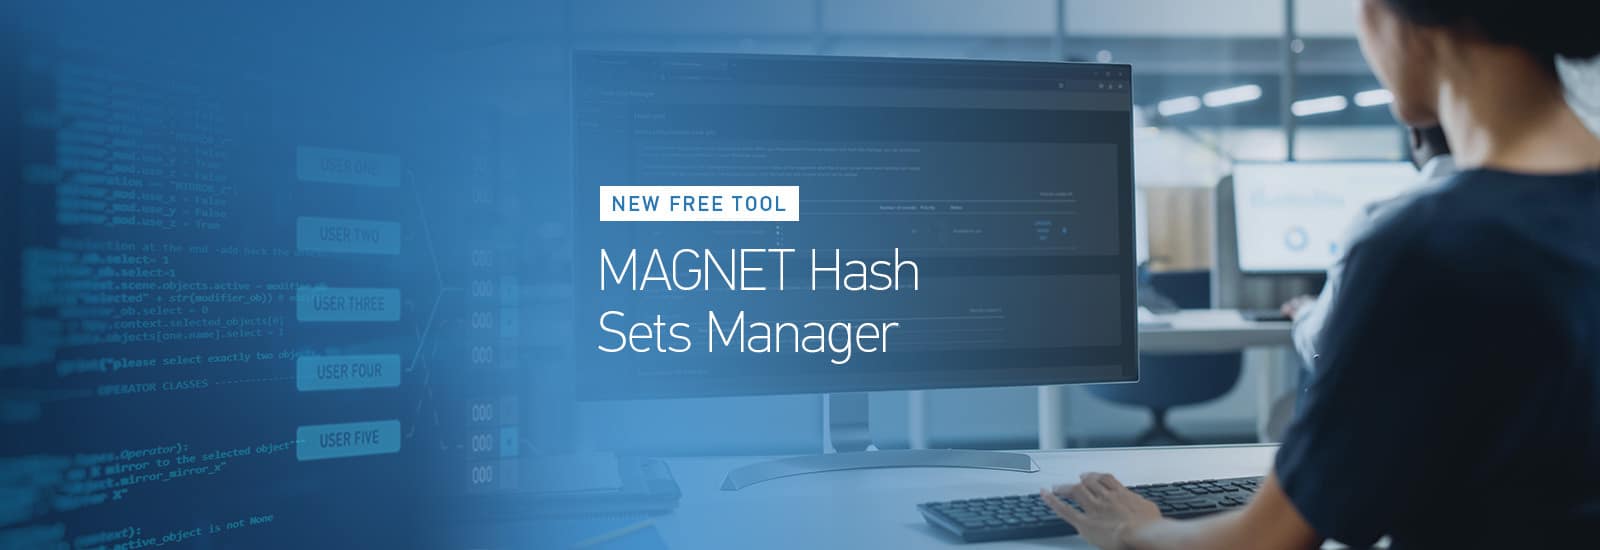 MAGNET Hash Sets Manager